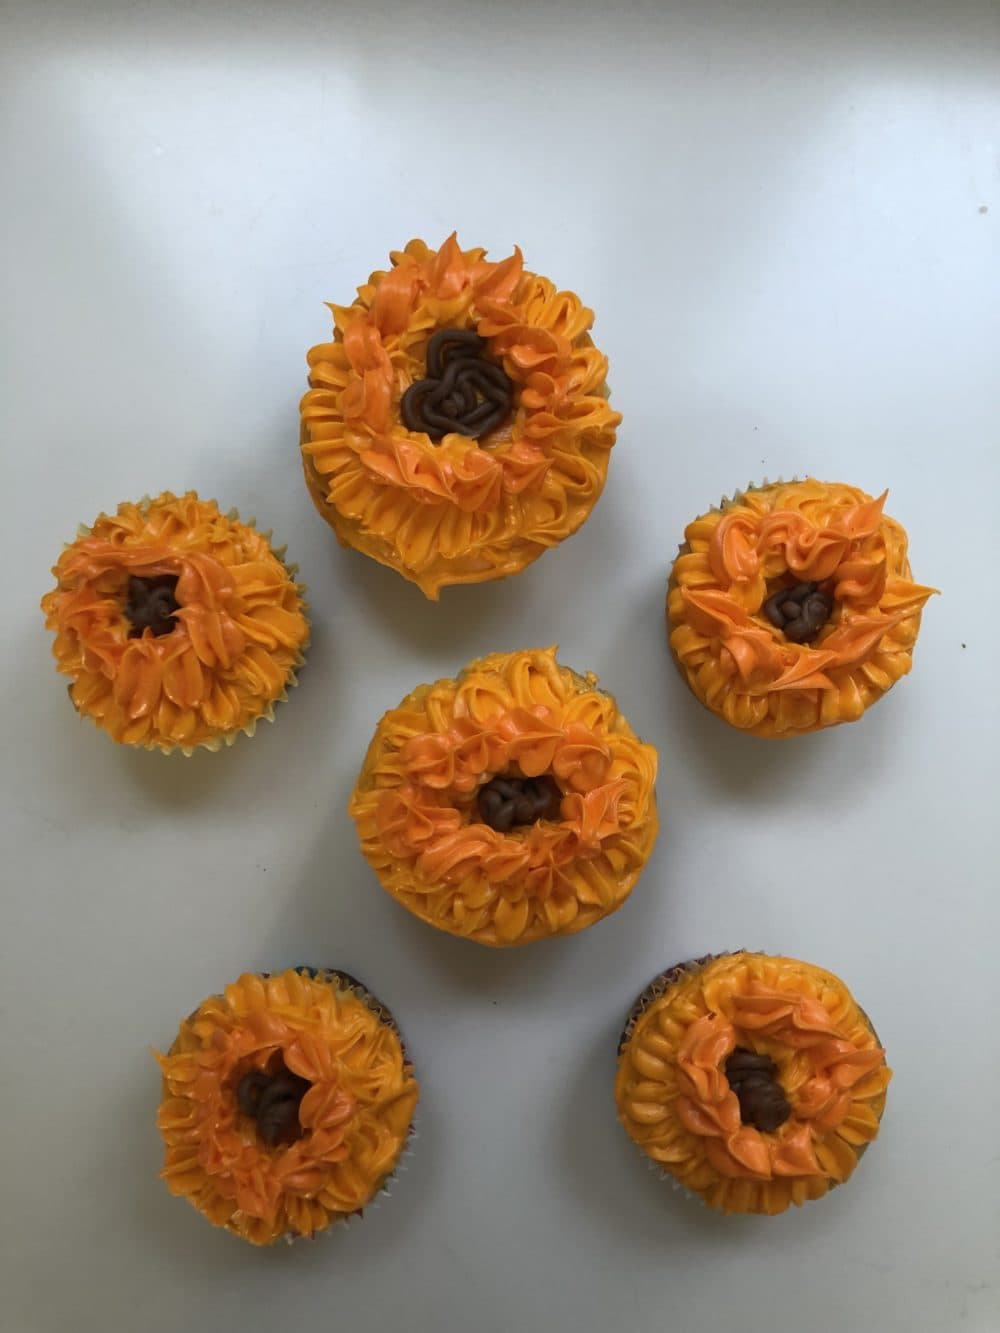 Cupcakes baked by Radio Boston host Tiziana Dearing. (Courtesy)